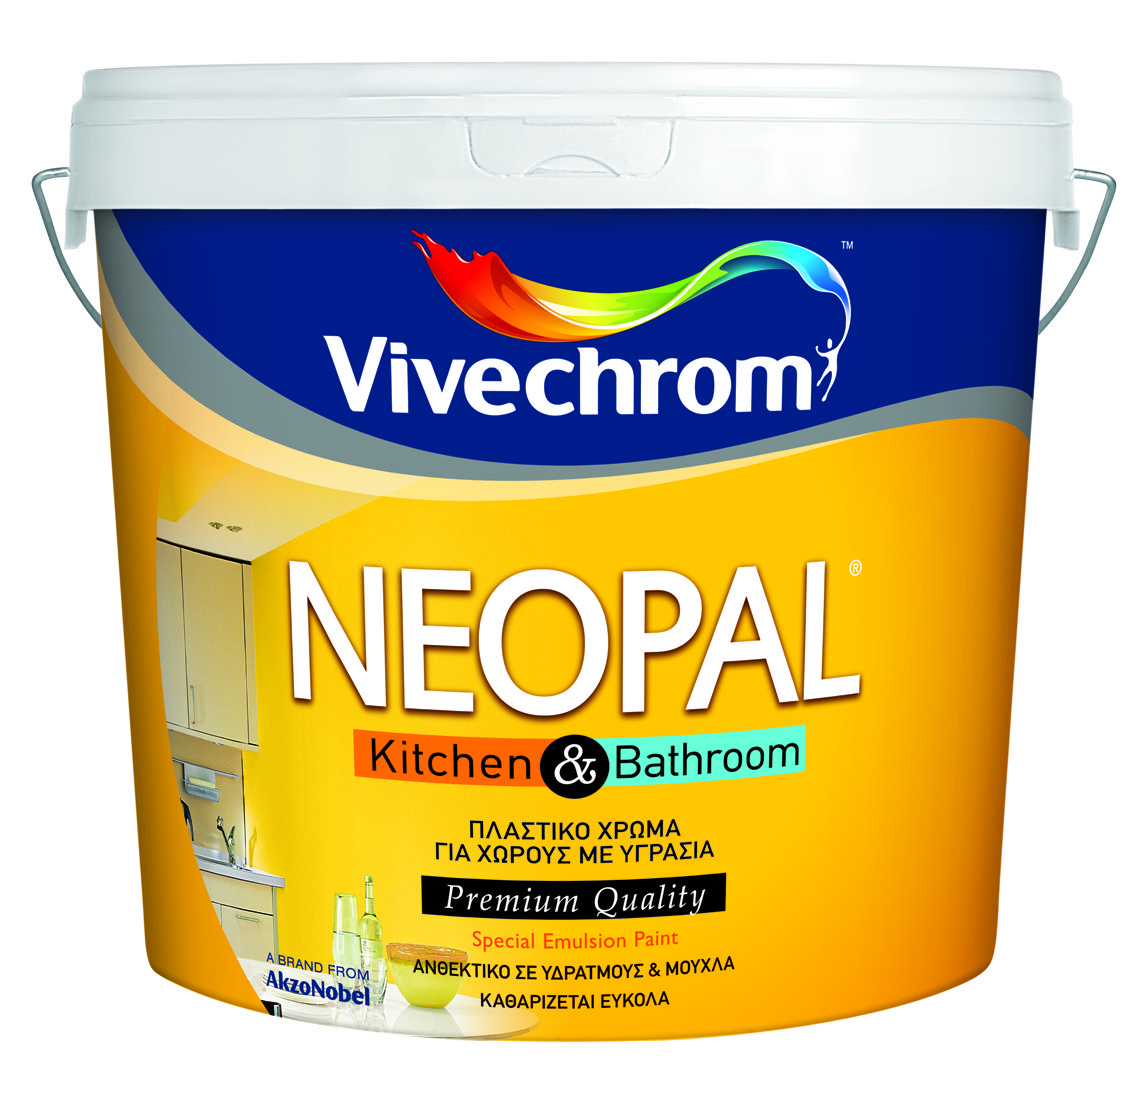 Vivechrom Neopal Kitchen & Bathroom White 10L